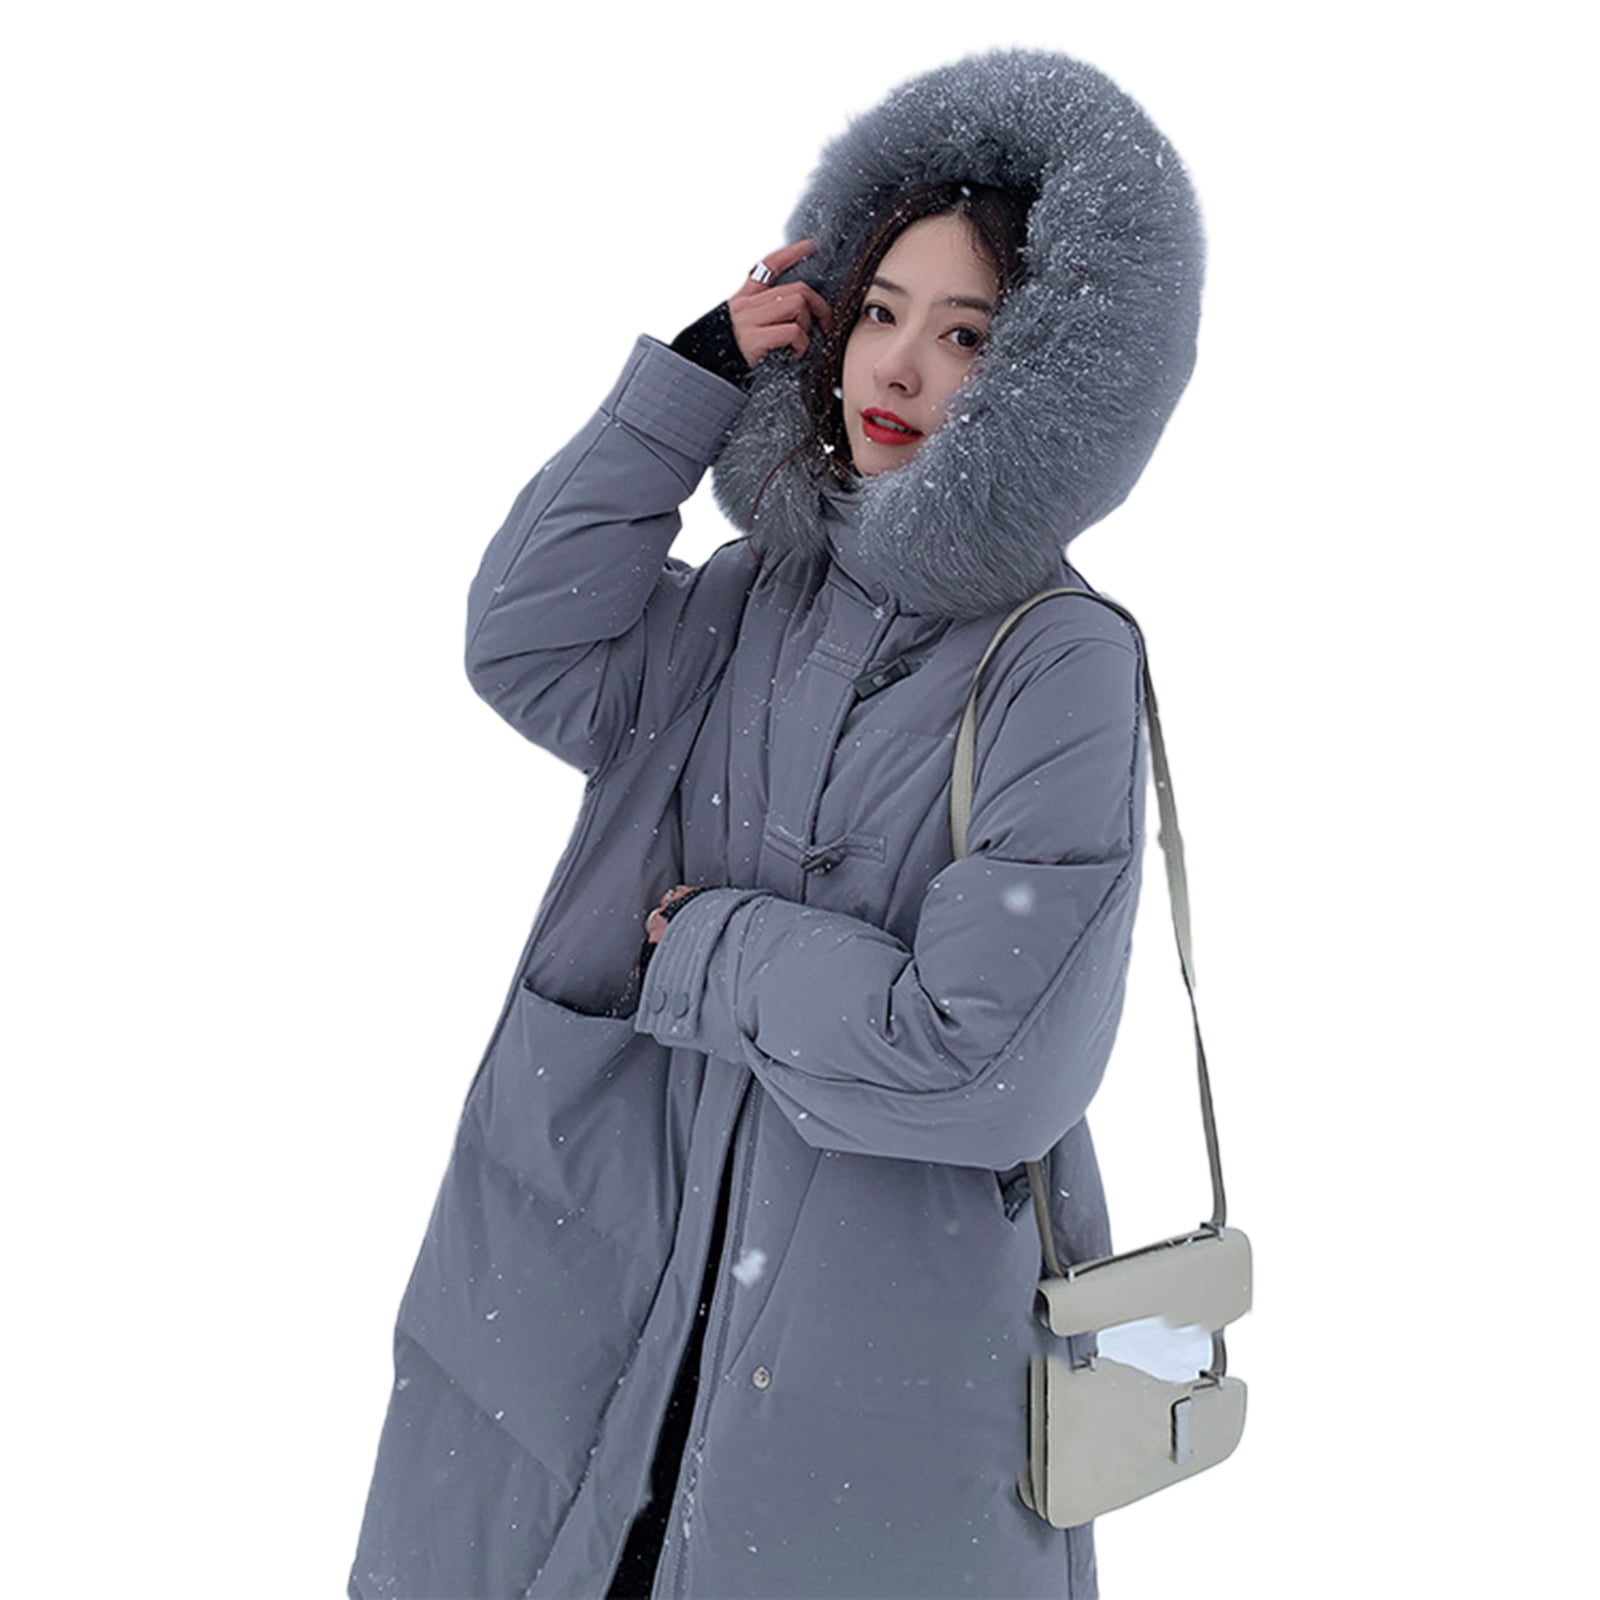 Winter warm women's slim long coat buckle coat jacket Parker hooded windbreaker